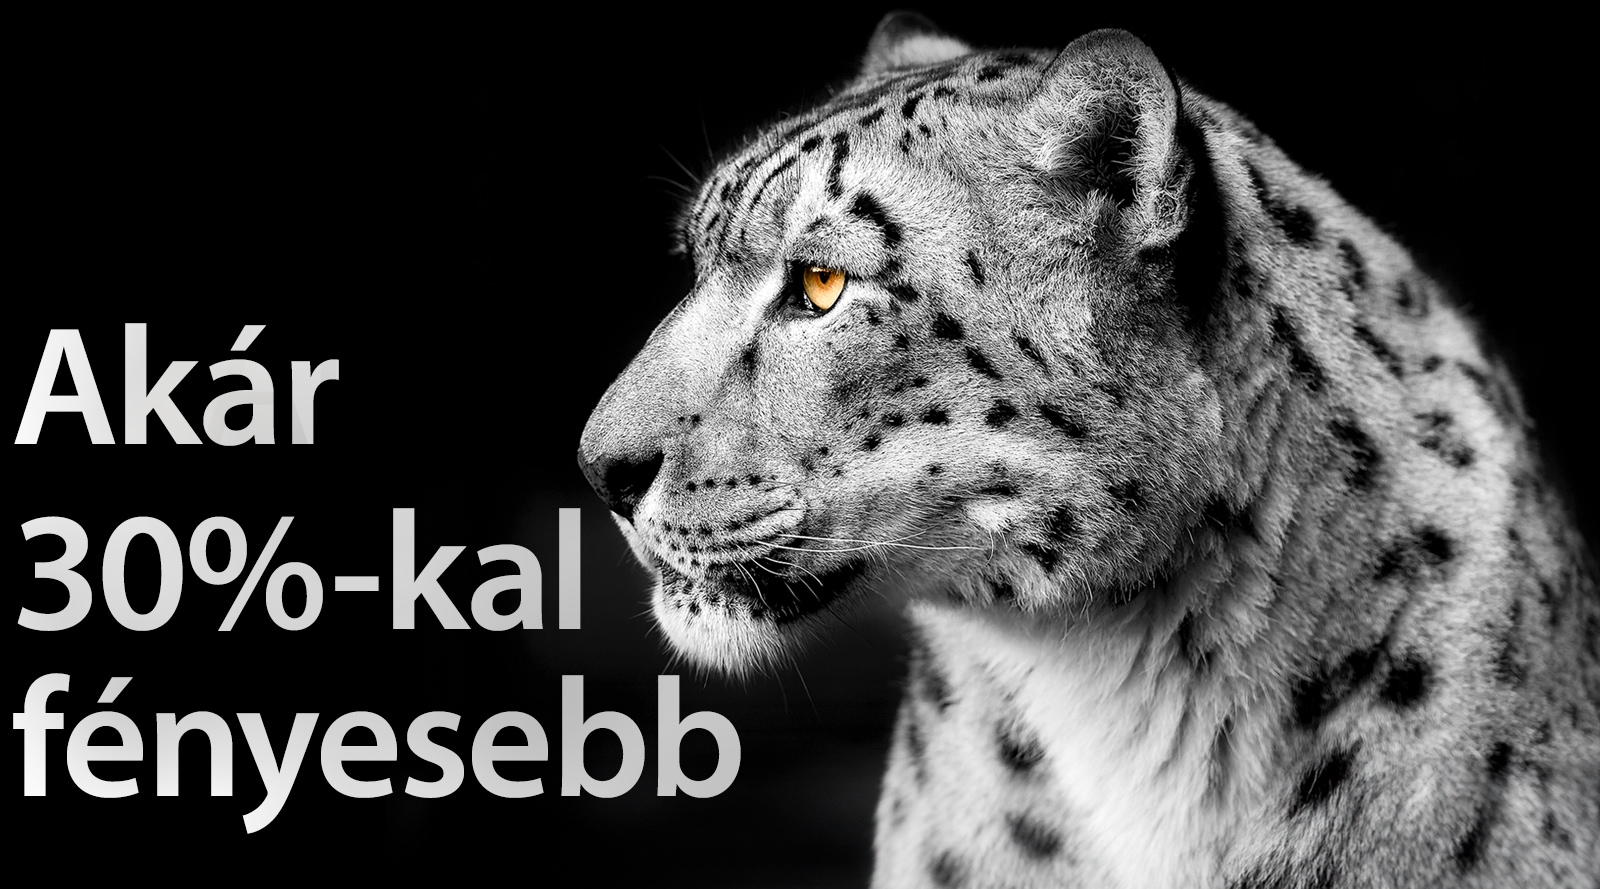 A kép bal oldalán egy fehér leopárd mutatja az oldalát. A bal oldalon az „Akár 30%-kal fényesebb" felirat jelenik meg.